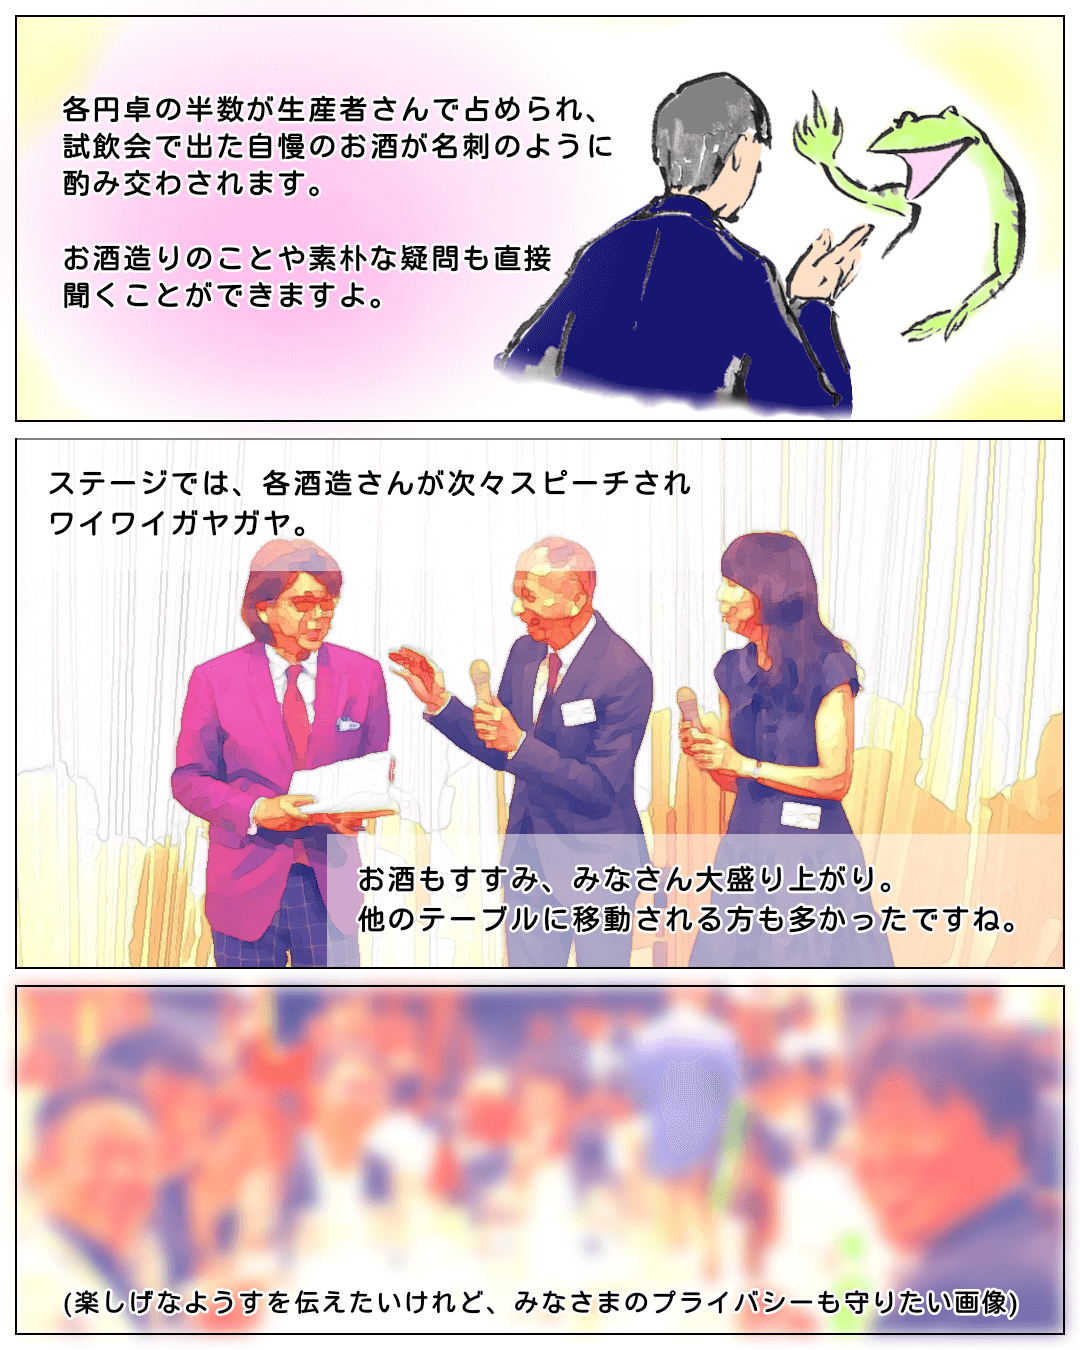 
レポート漫画「君嶋会３」